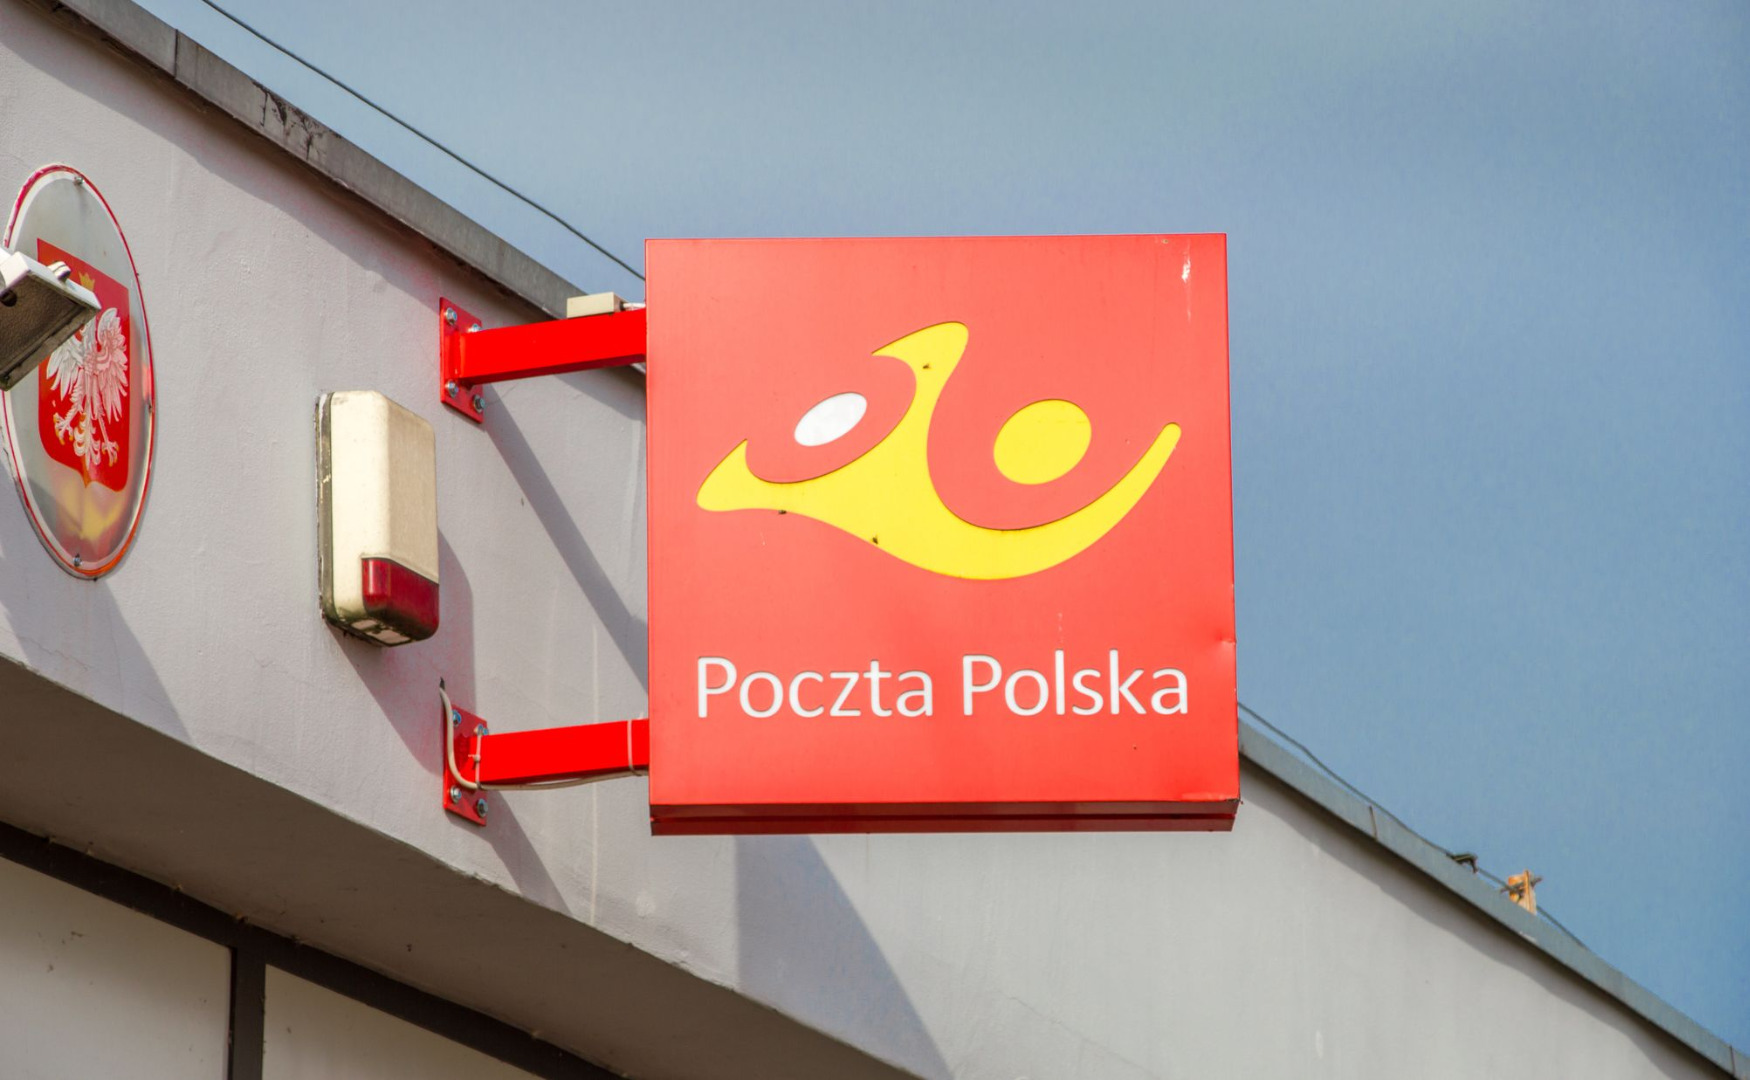 Ile osób zwolni w tym roku Poczta Polska? Są informacje ze spółki -  GazetaPrawna.pl